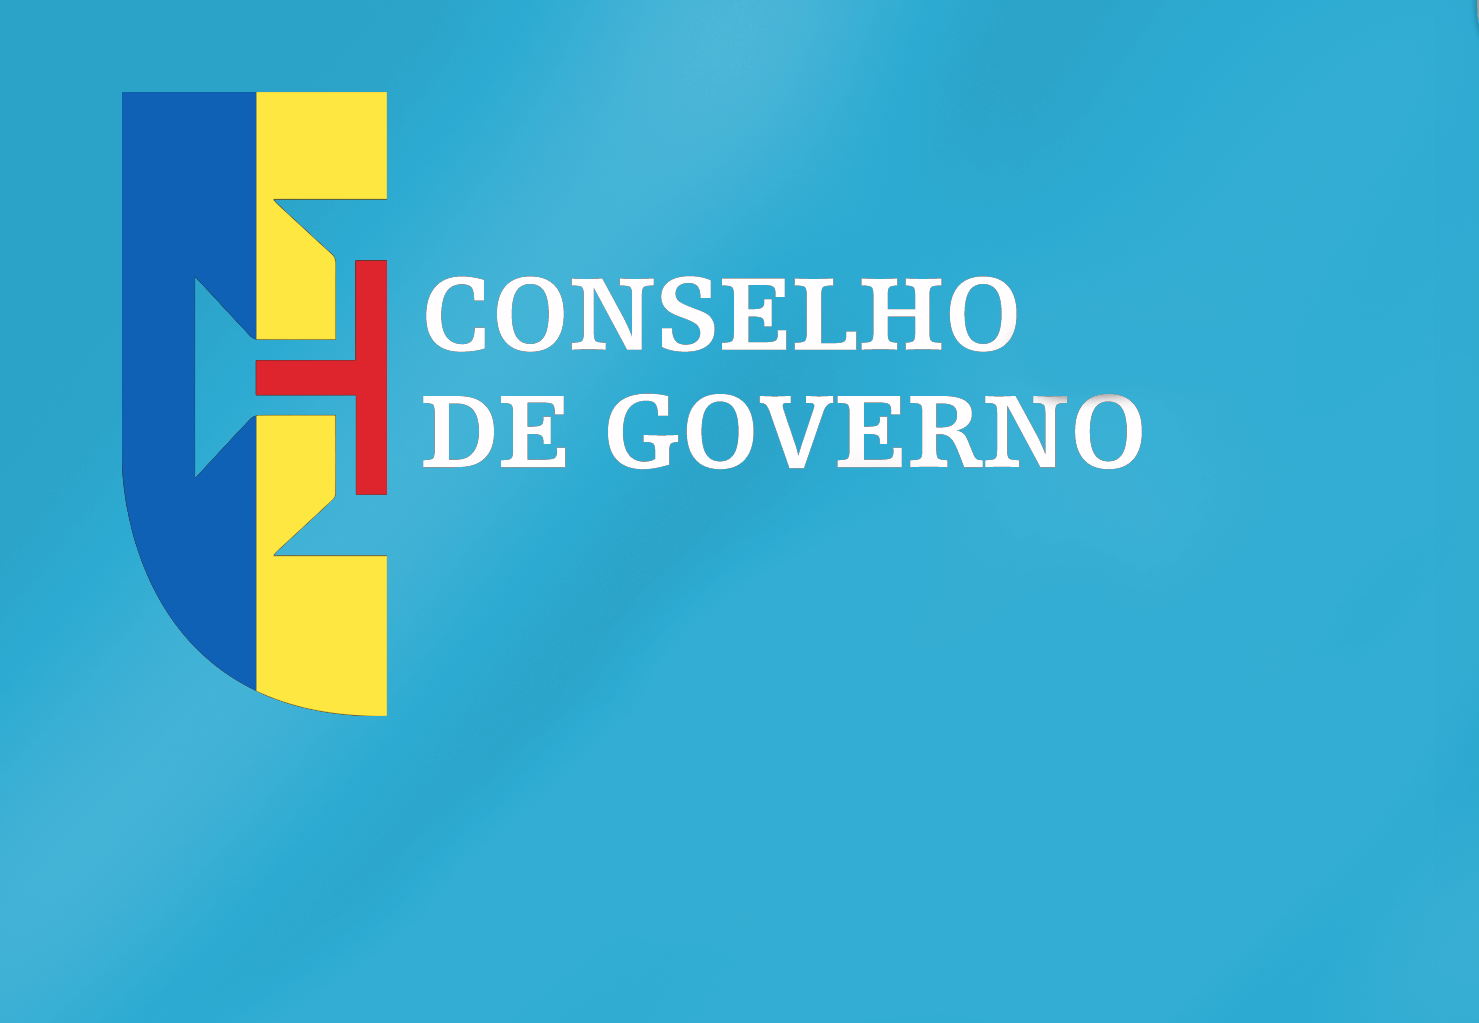 Conclusões Conselho de Governo - 23 de fevereiro de 2022